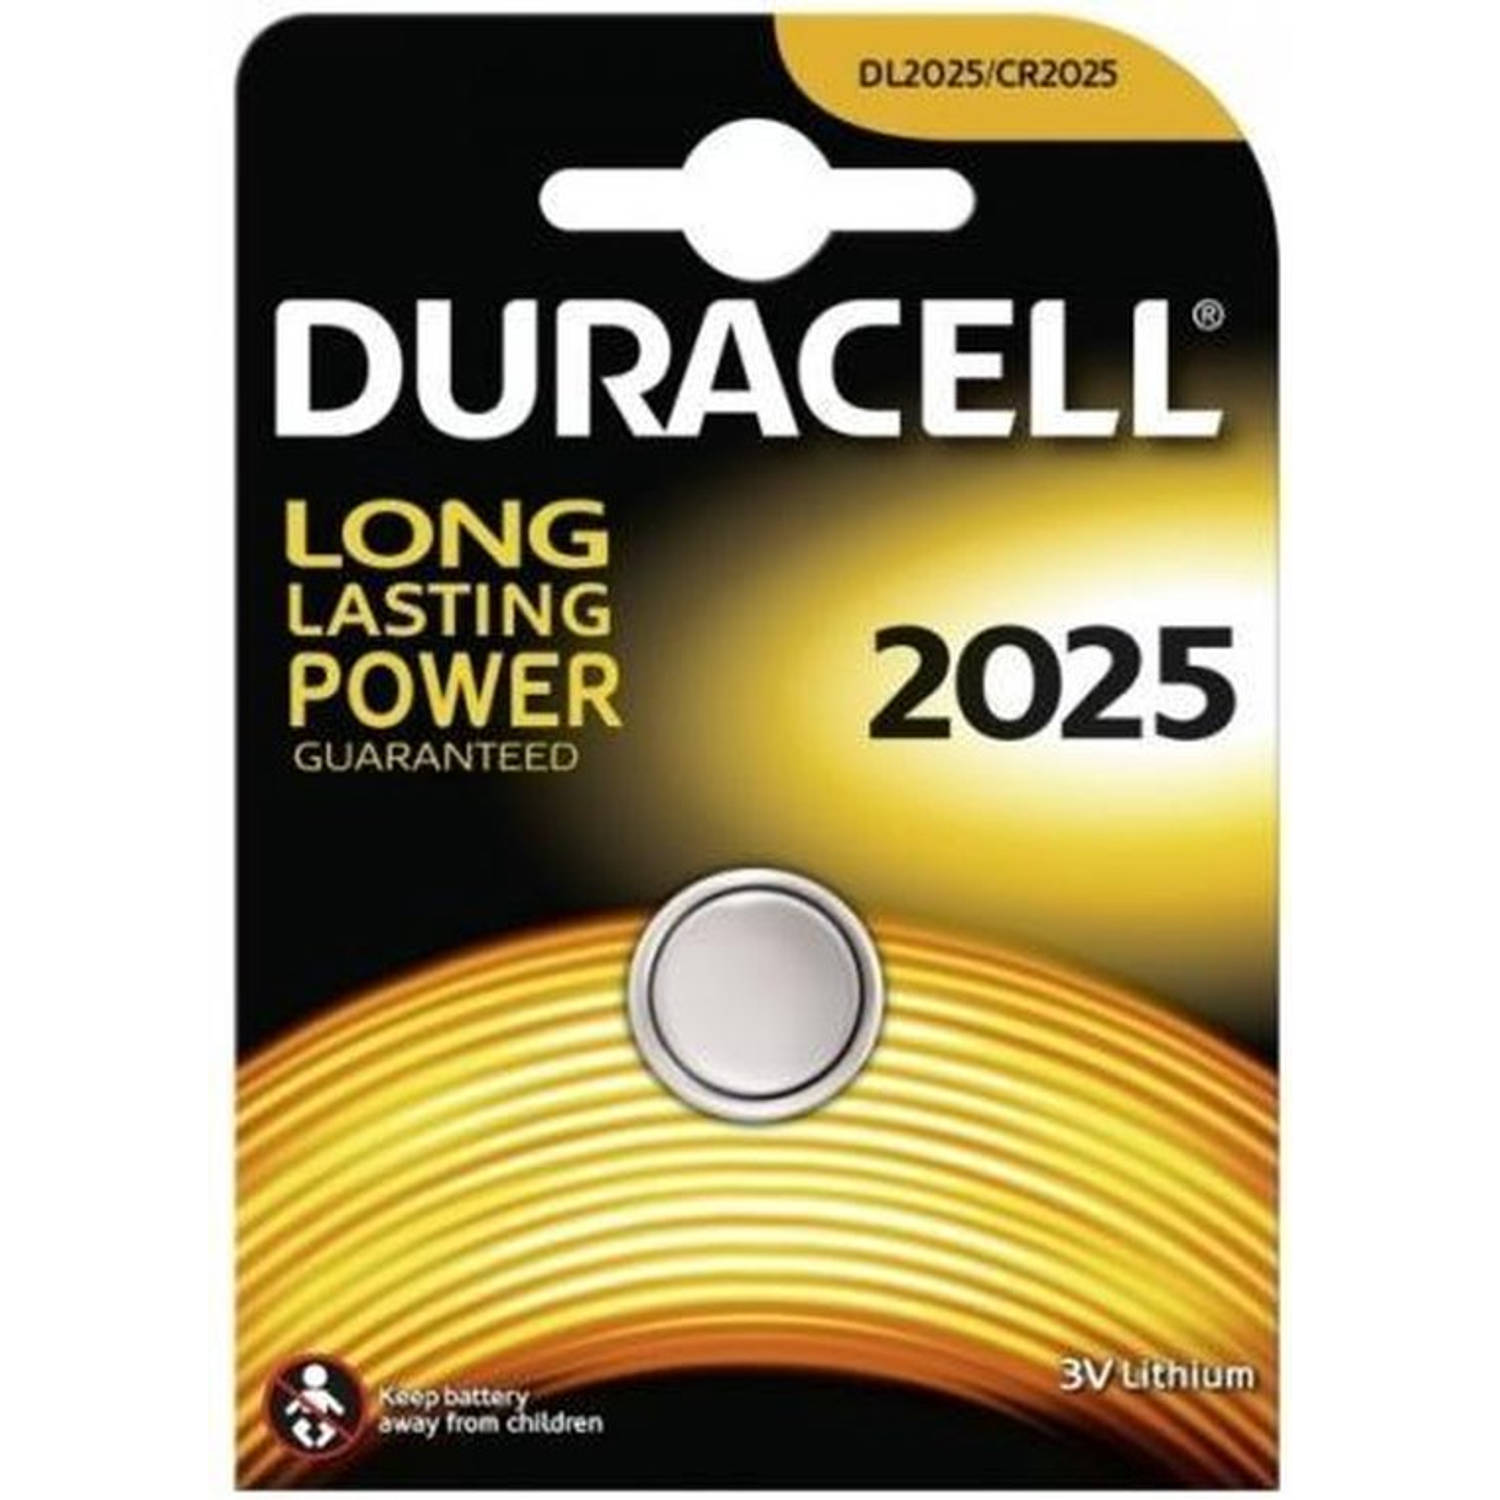 Duracell knoopcel DL2025 3V Lithium batterij - 10 stuks